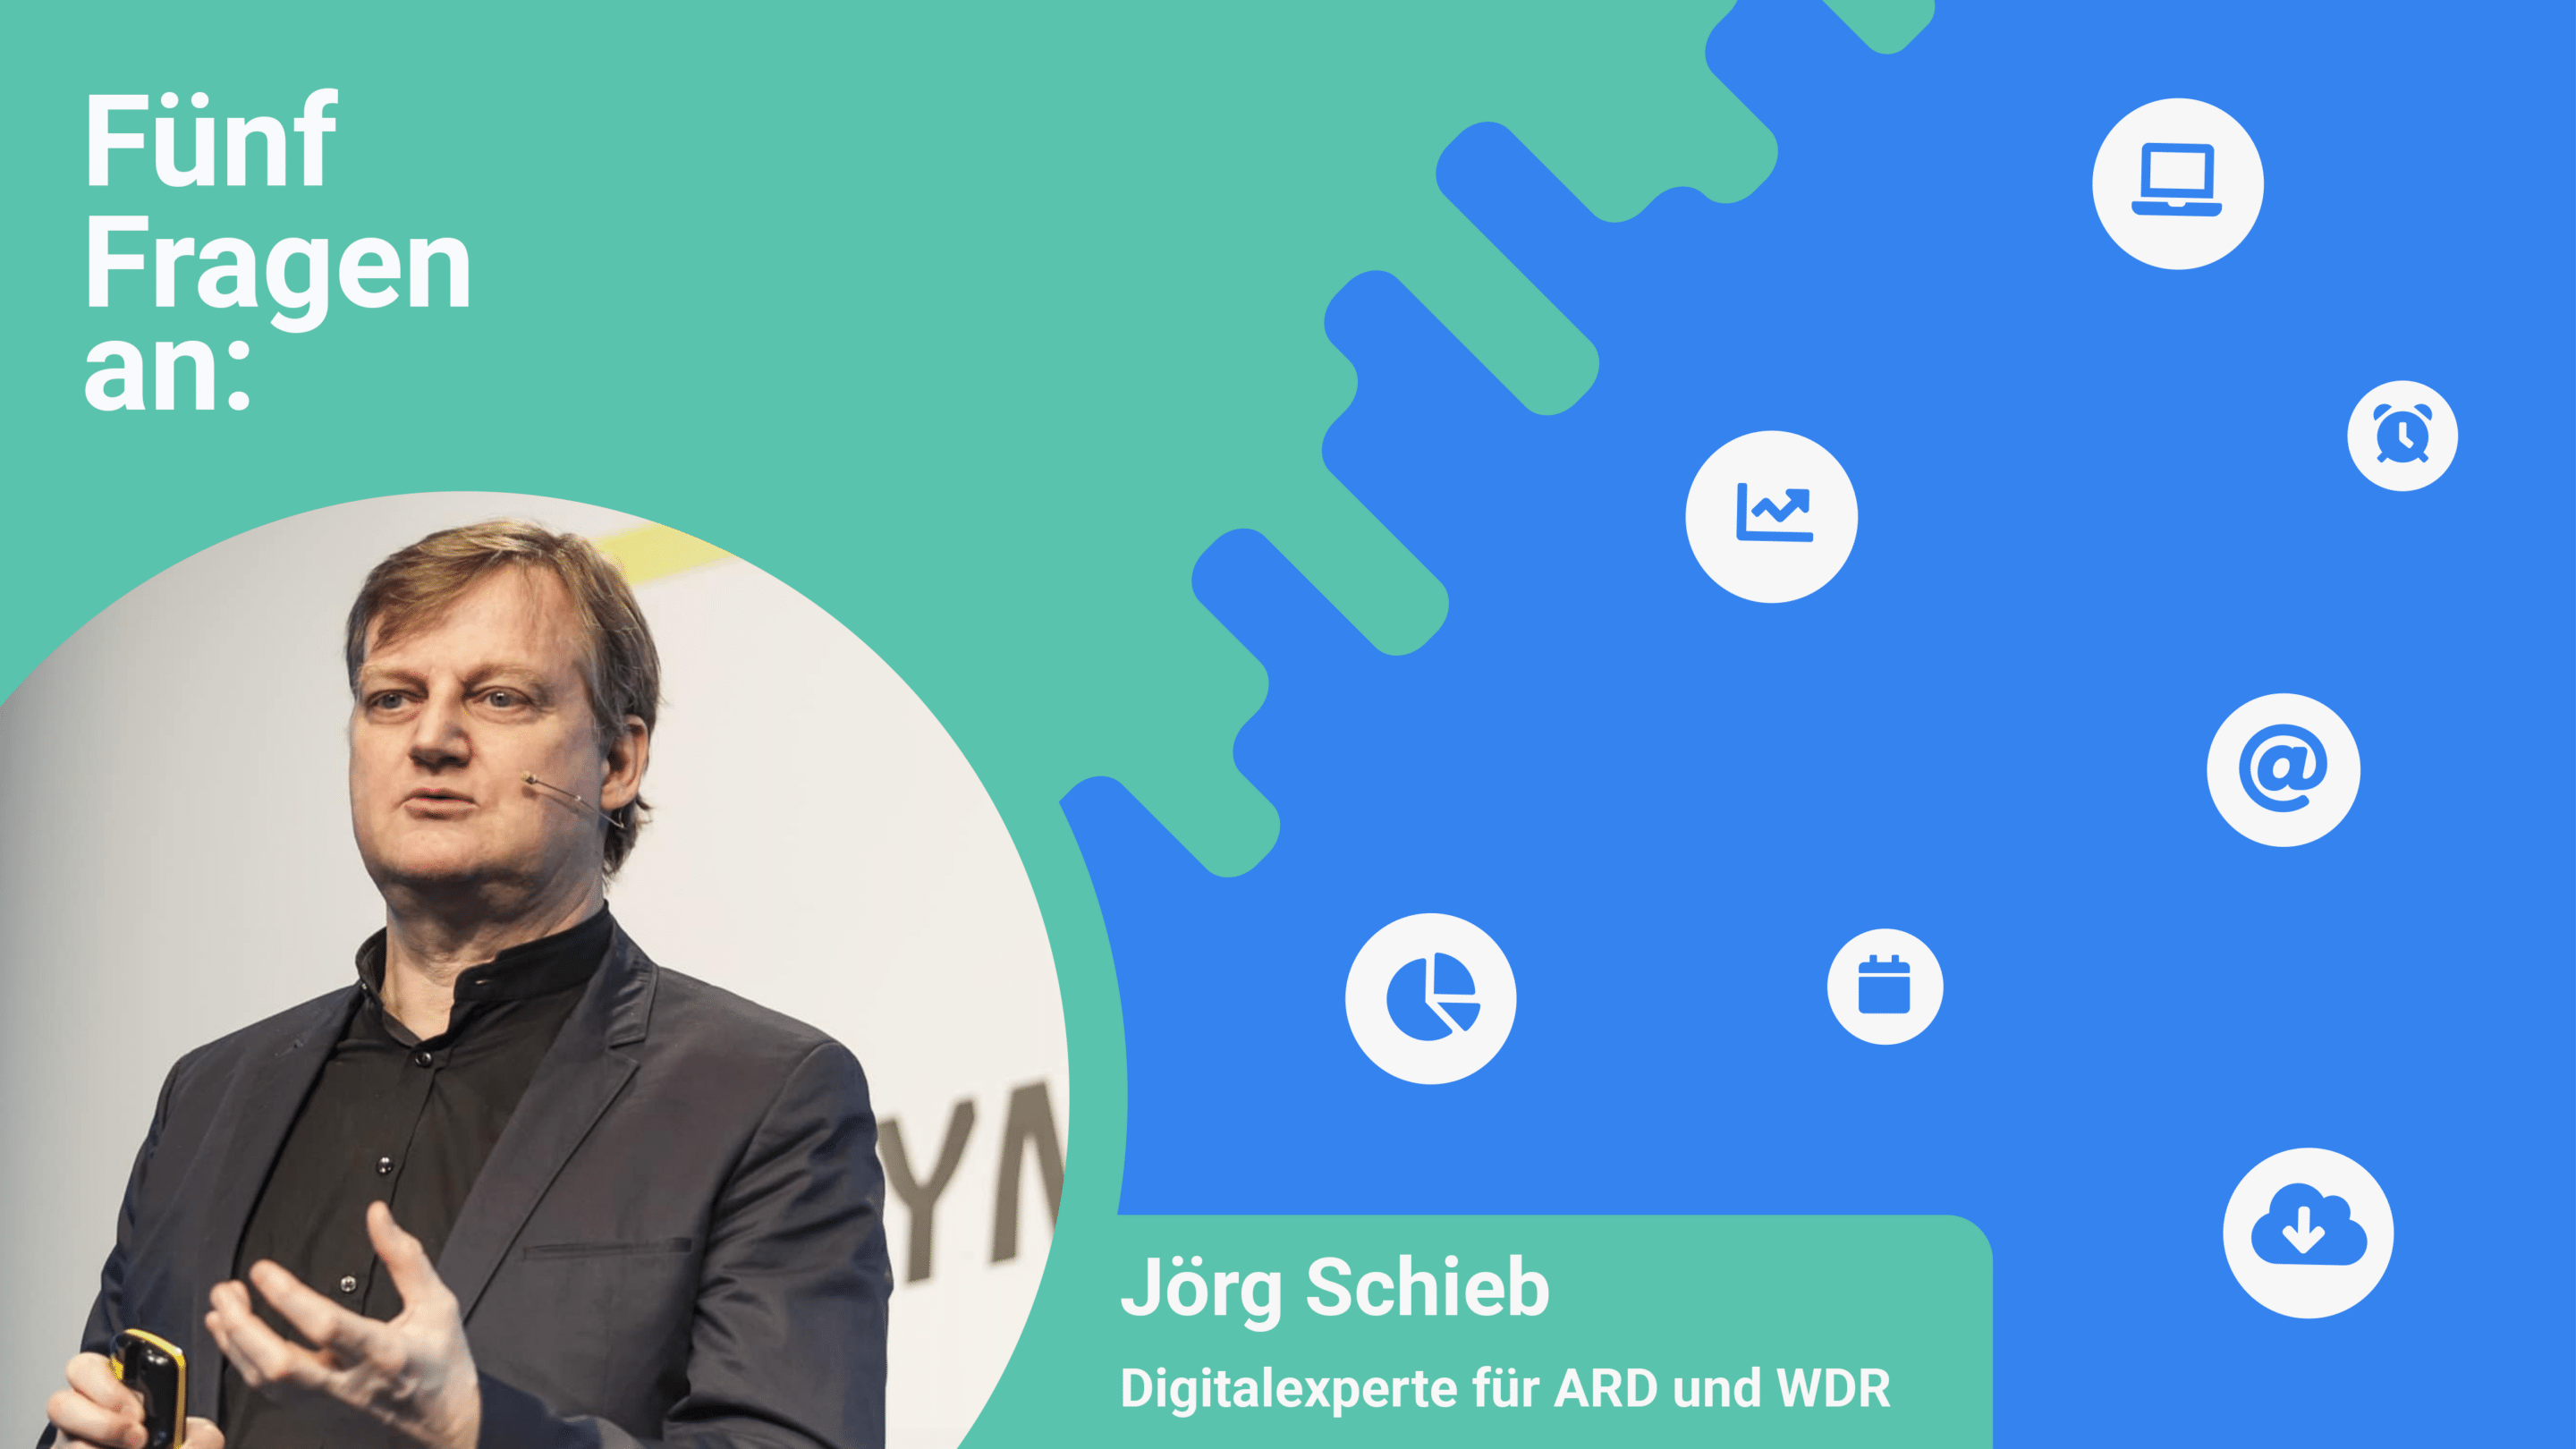 Jörg Schieb, Digitalexperte von ARD und WDR